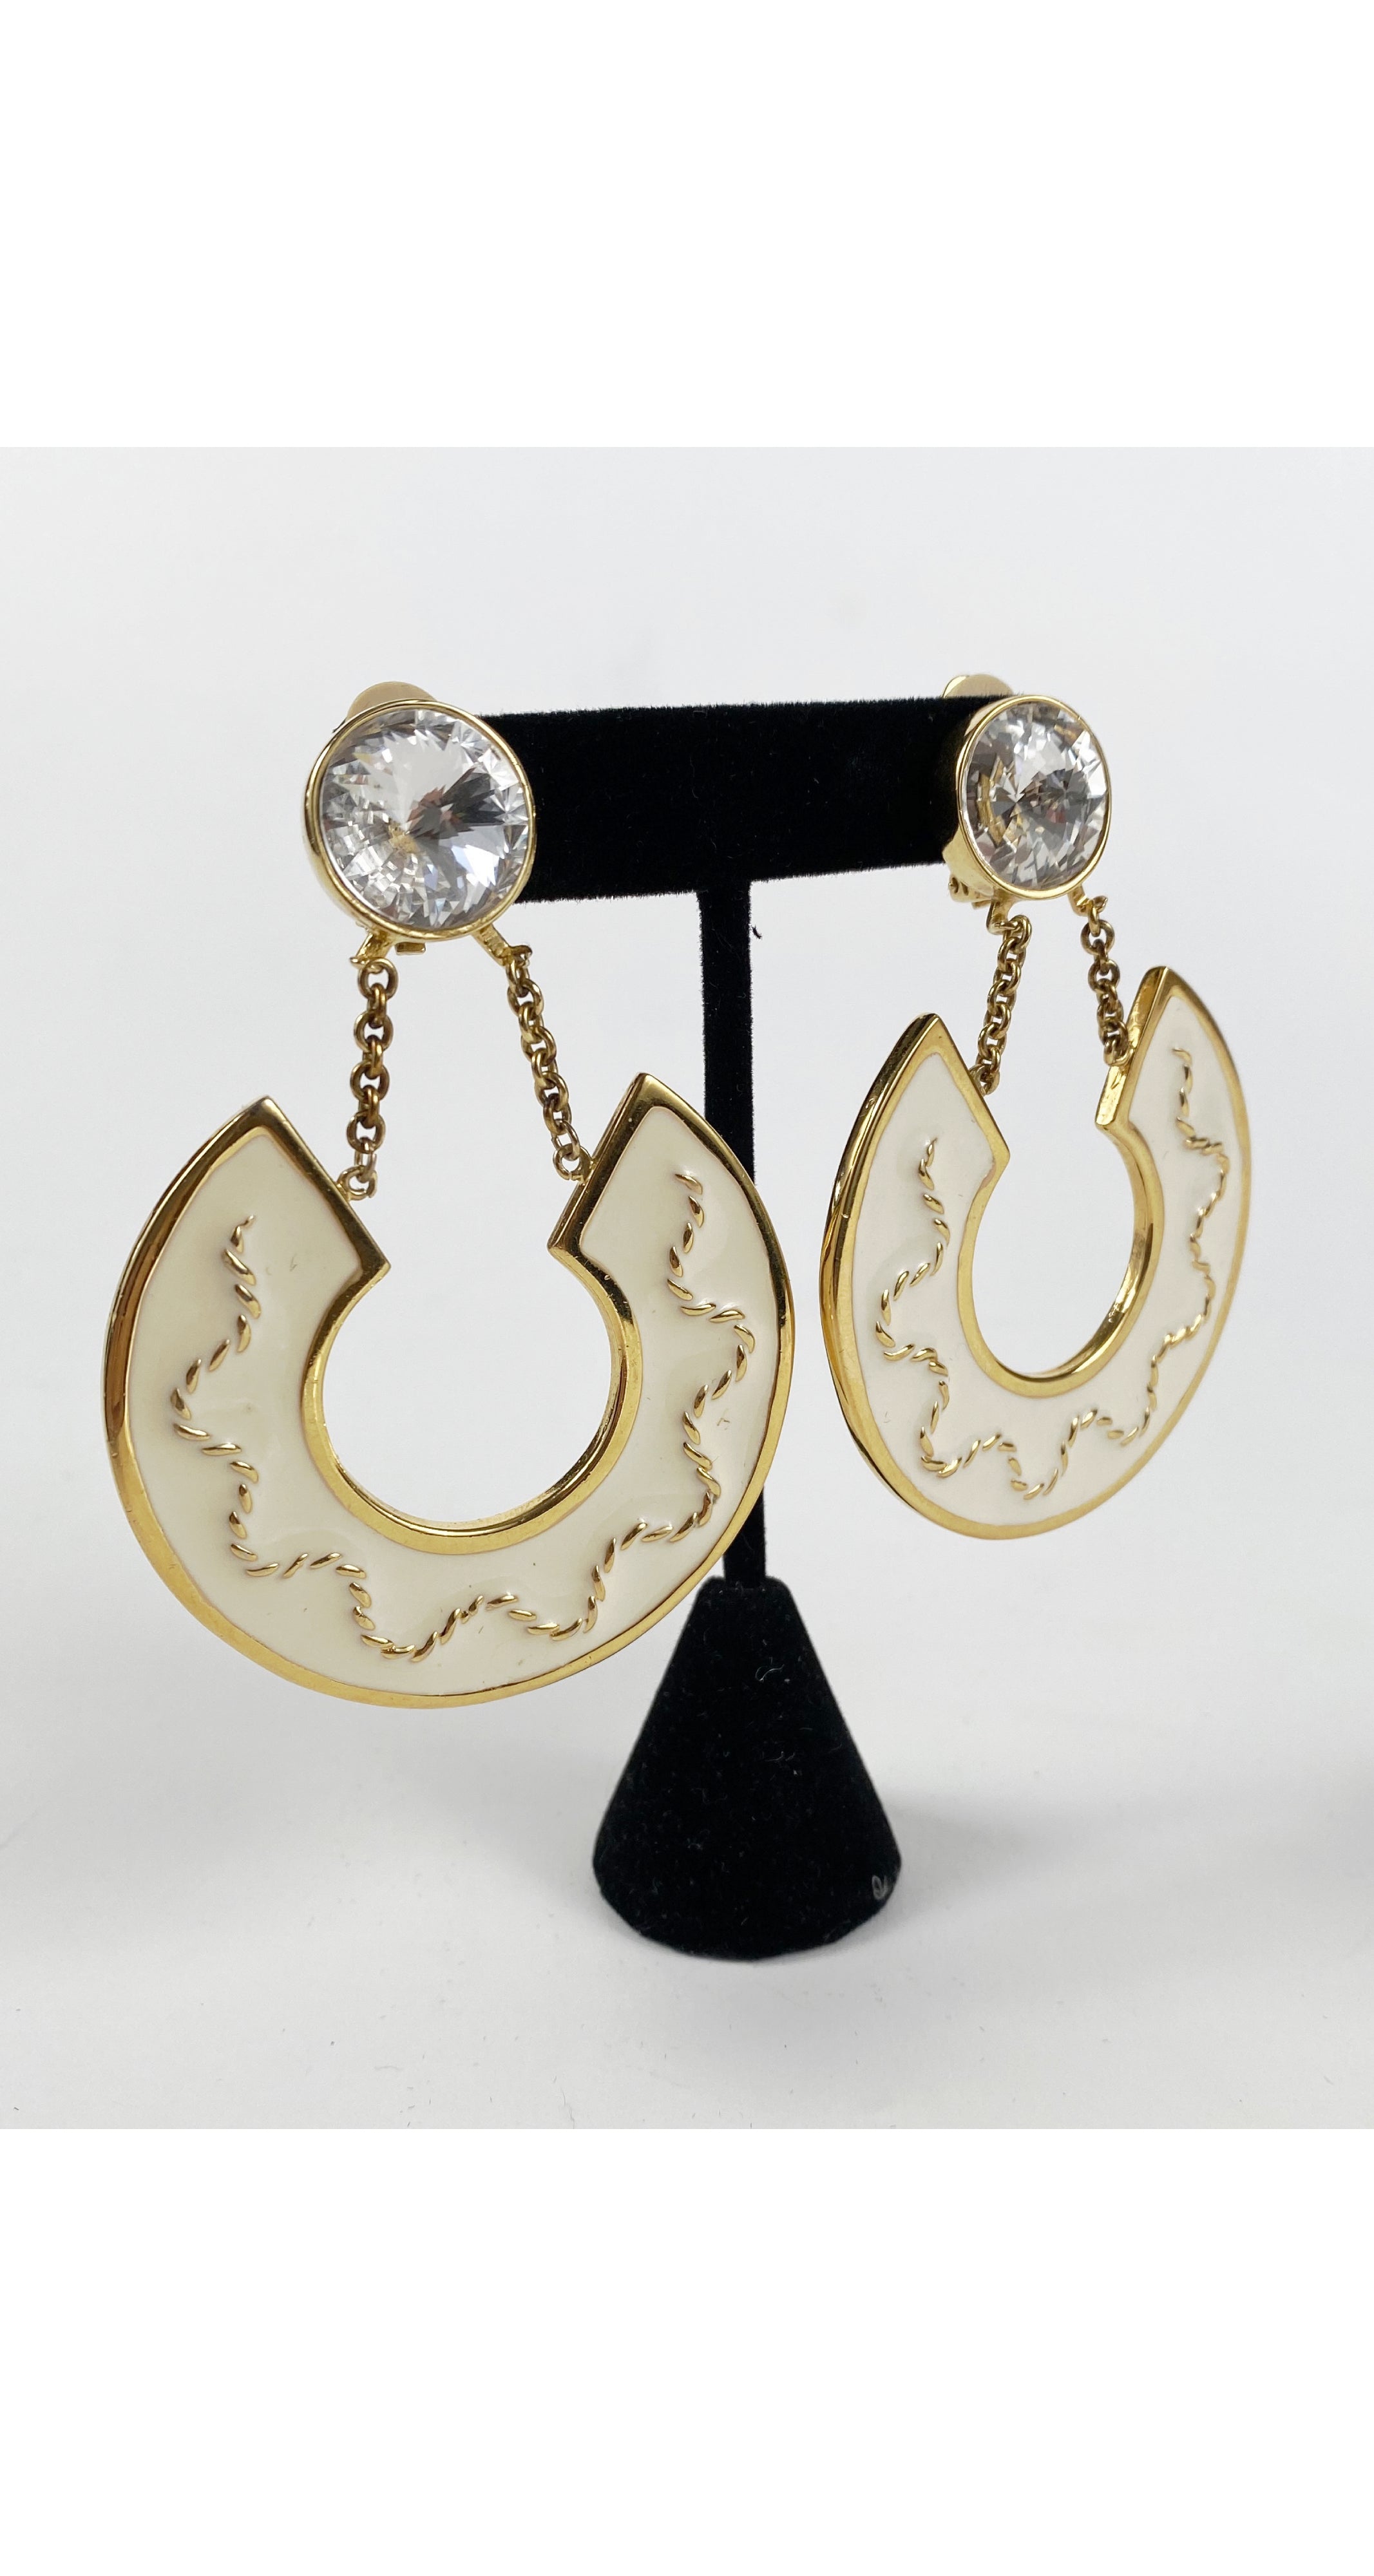 1980s Large Enamel Rhinestone Gold Clip-On Earrings